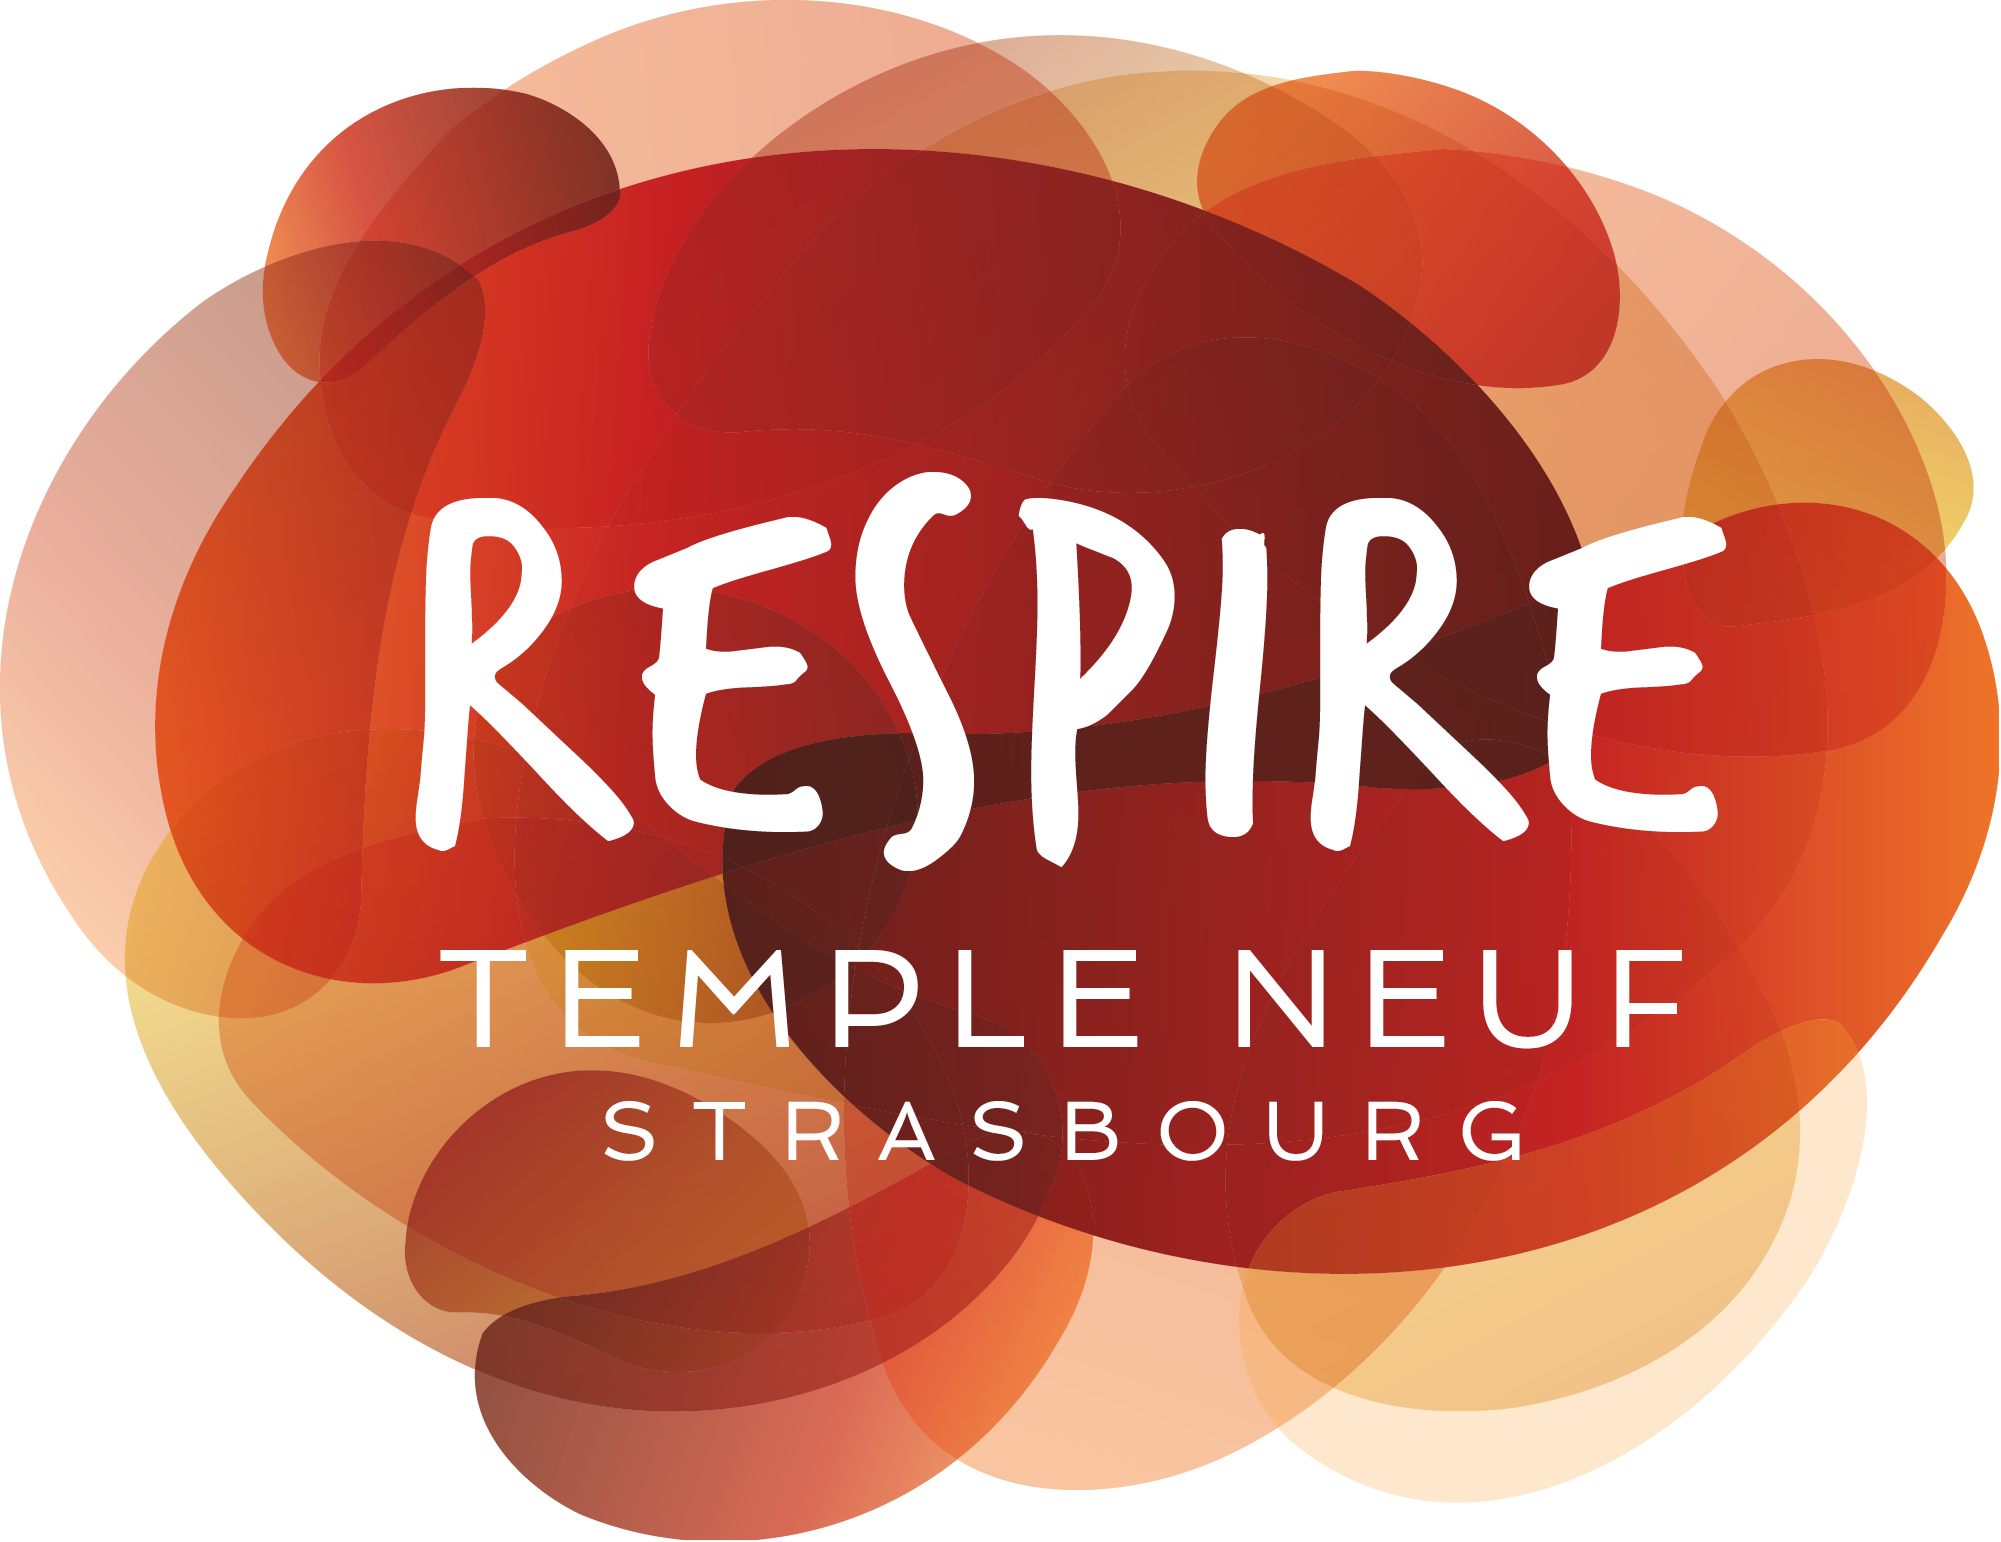 RESPIRE - Temple Neuf